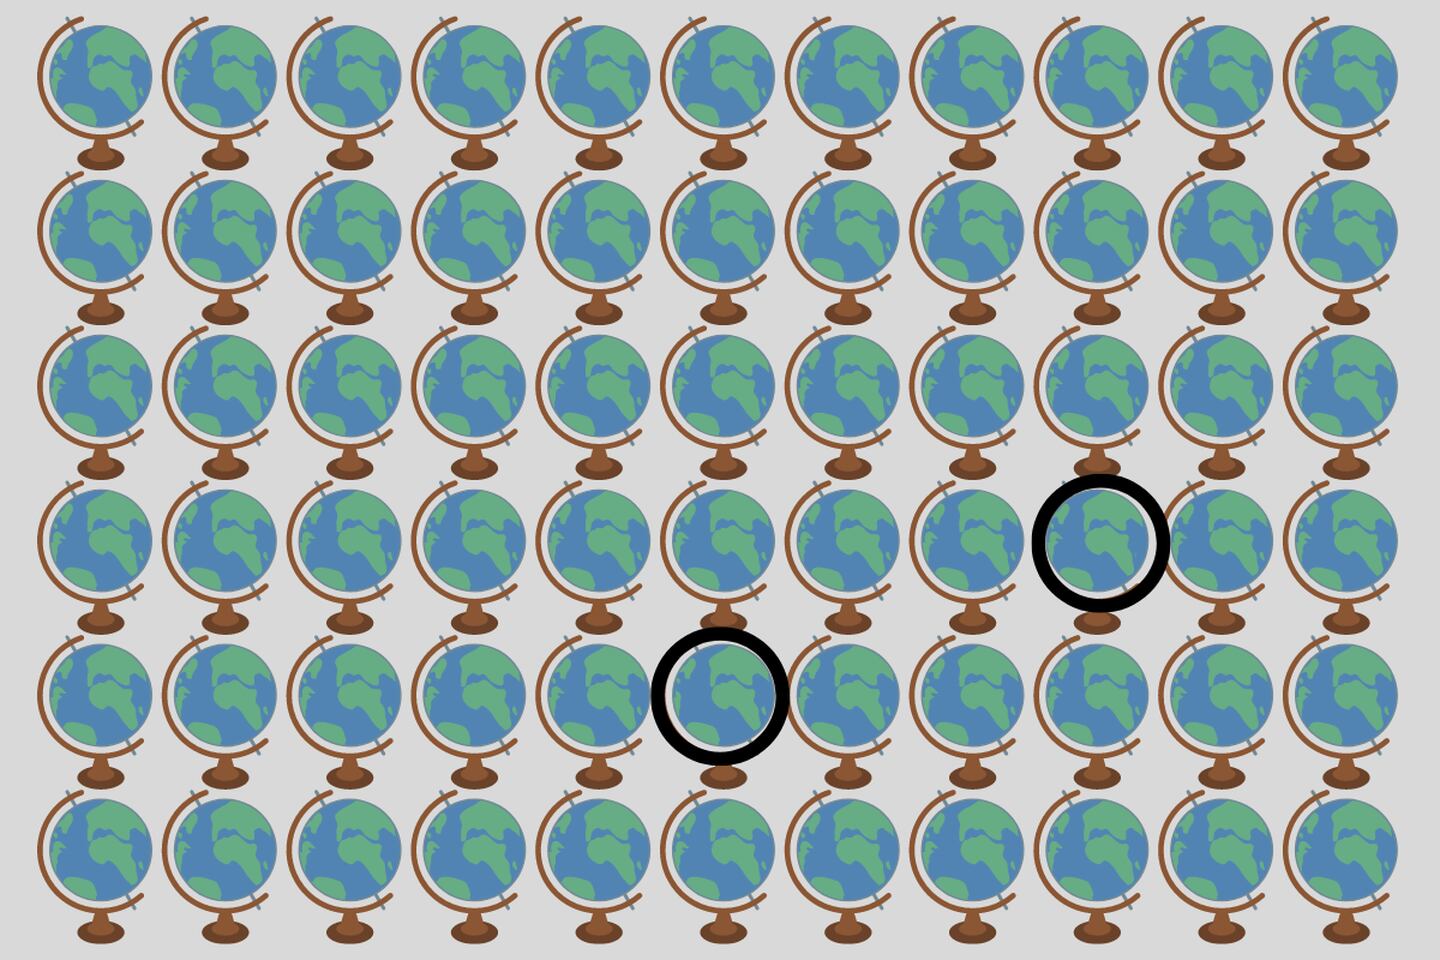 Muchos globos terráqueos iguales, pero dos diferentes, que están señalados con círculo negro.